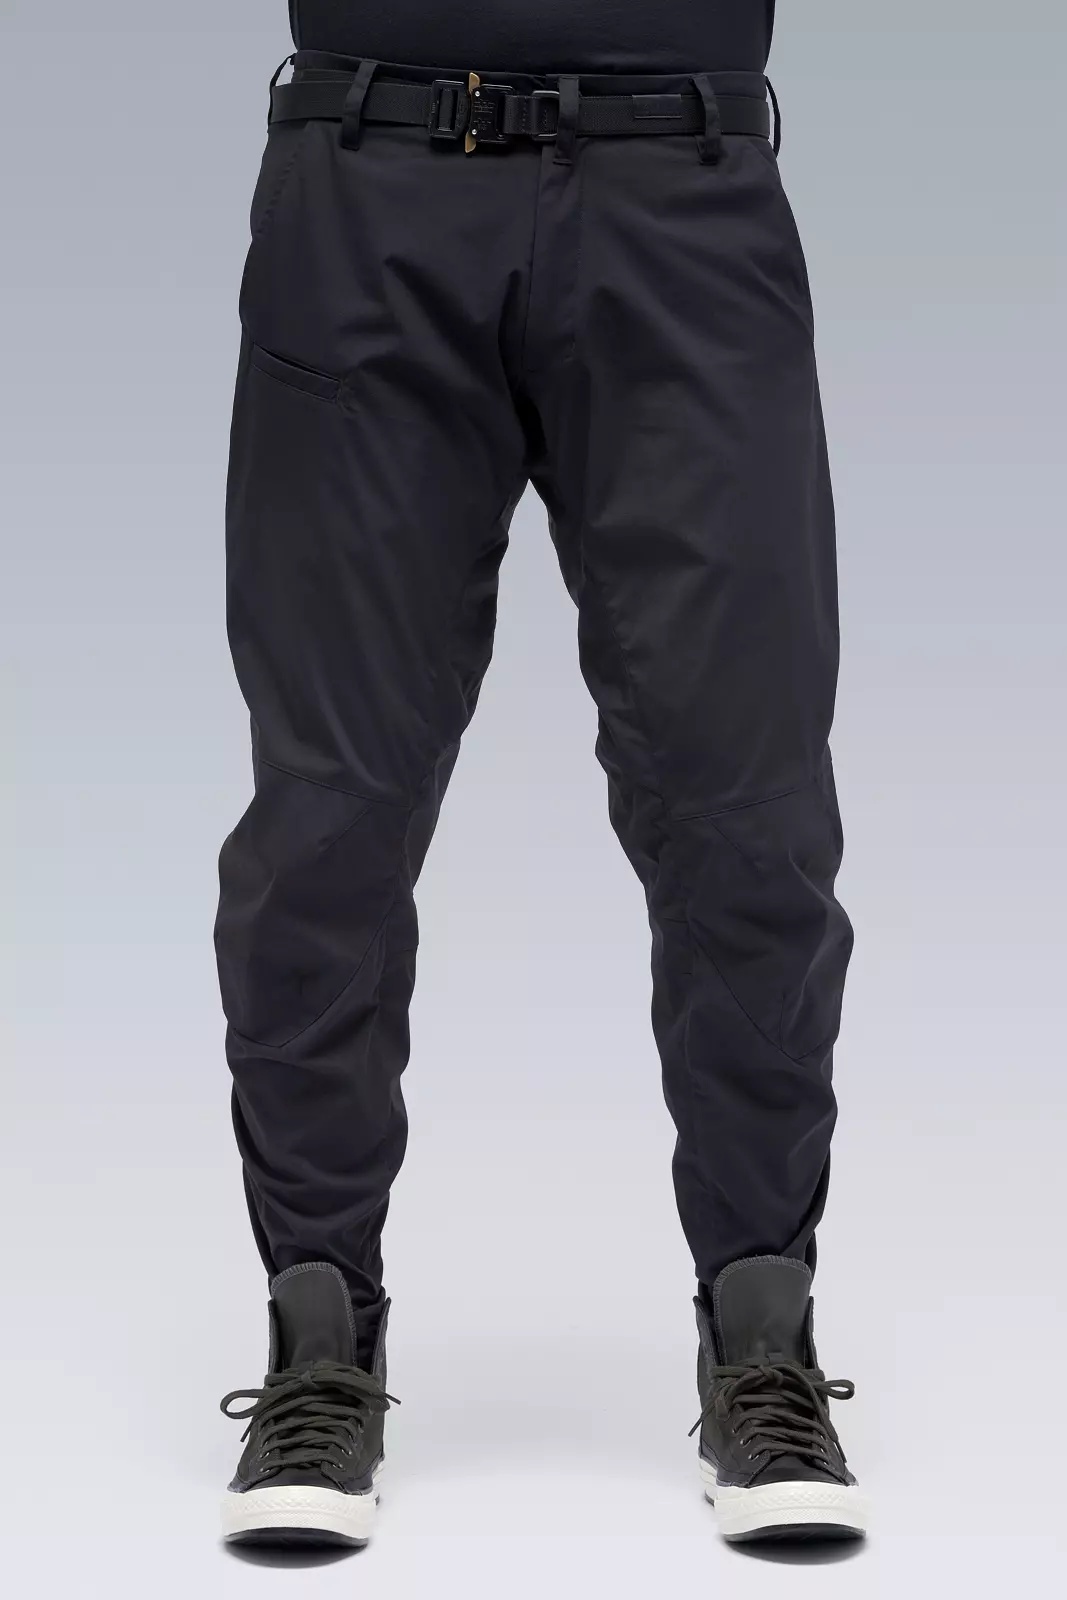 P10-E Encapsulated Nylon  Articulated Pant Black - 1